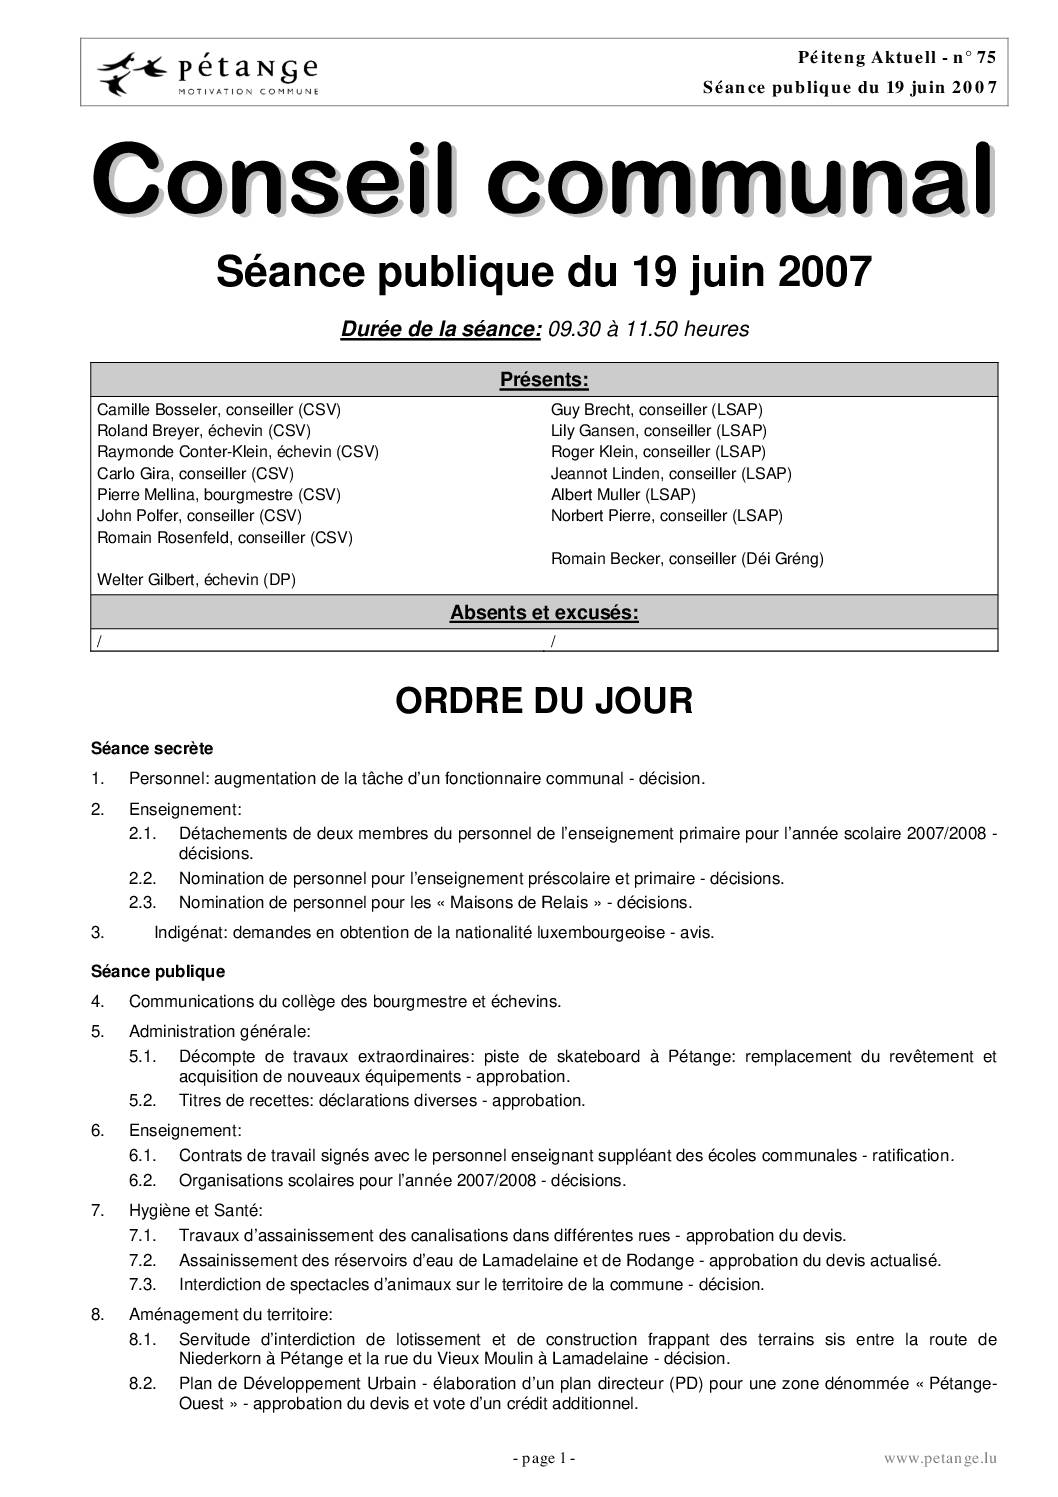 Rapport des séances du conseil communal du 19.06.2007, 13.07.2007 et 27.07.2007